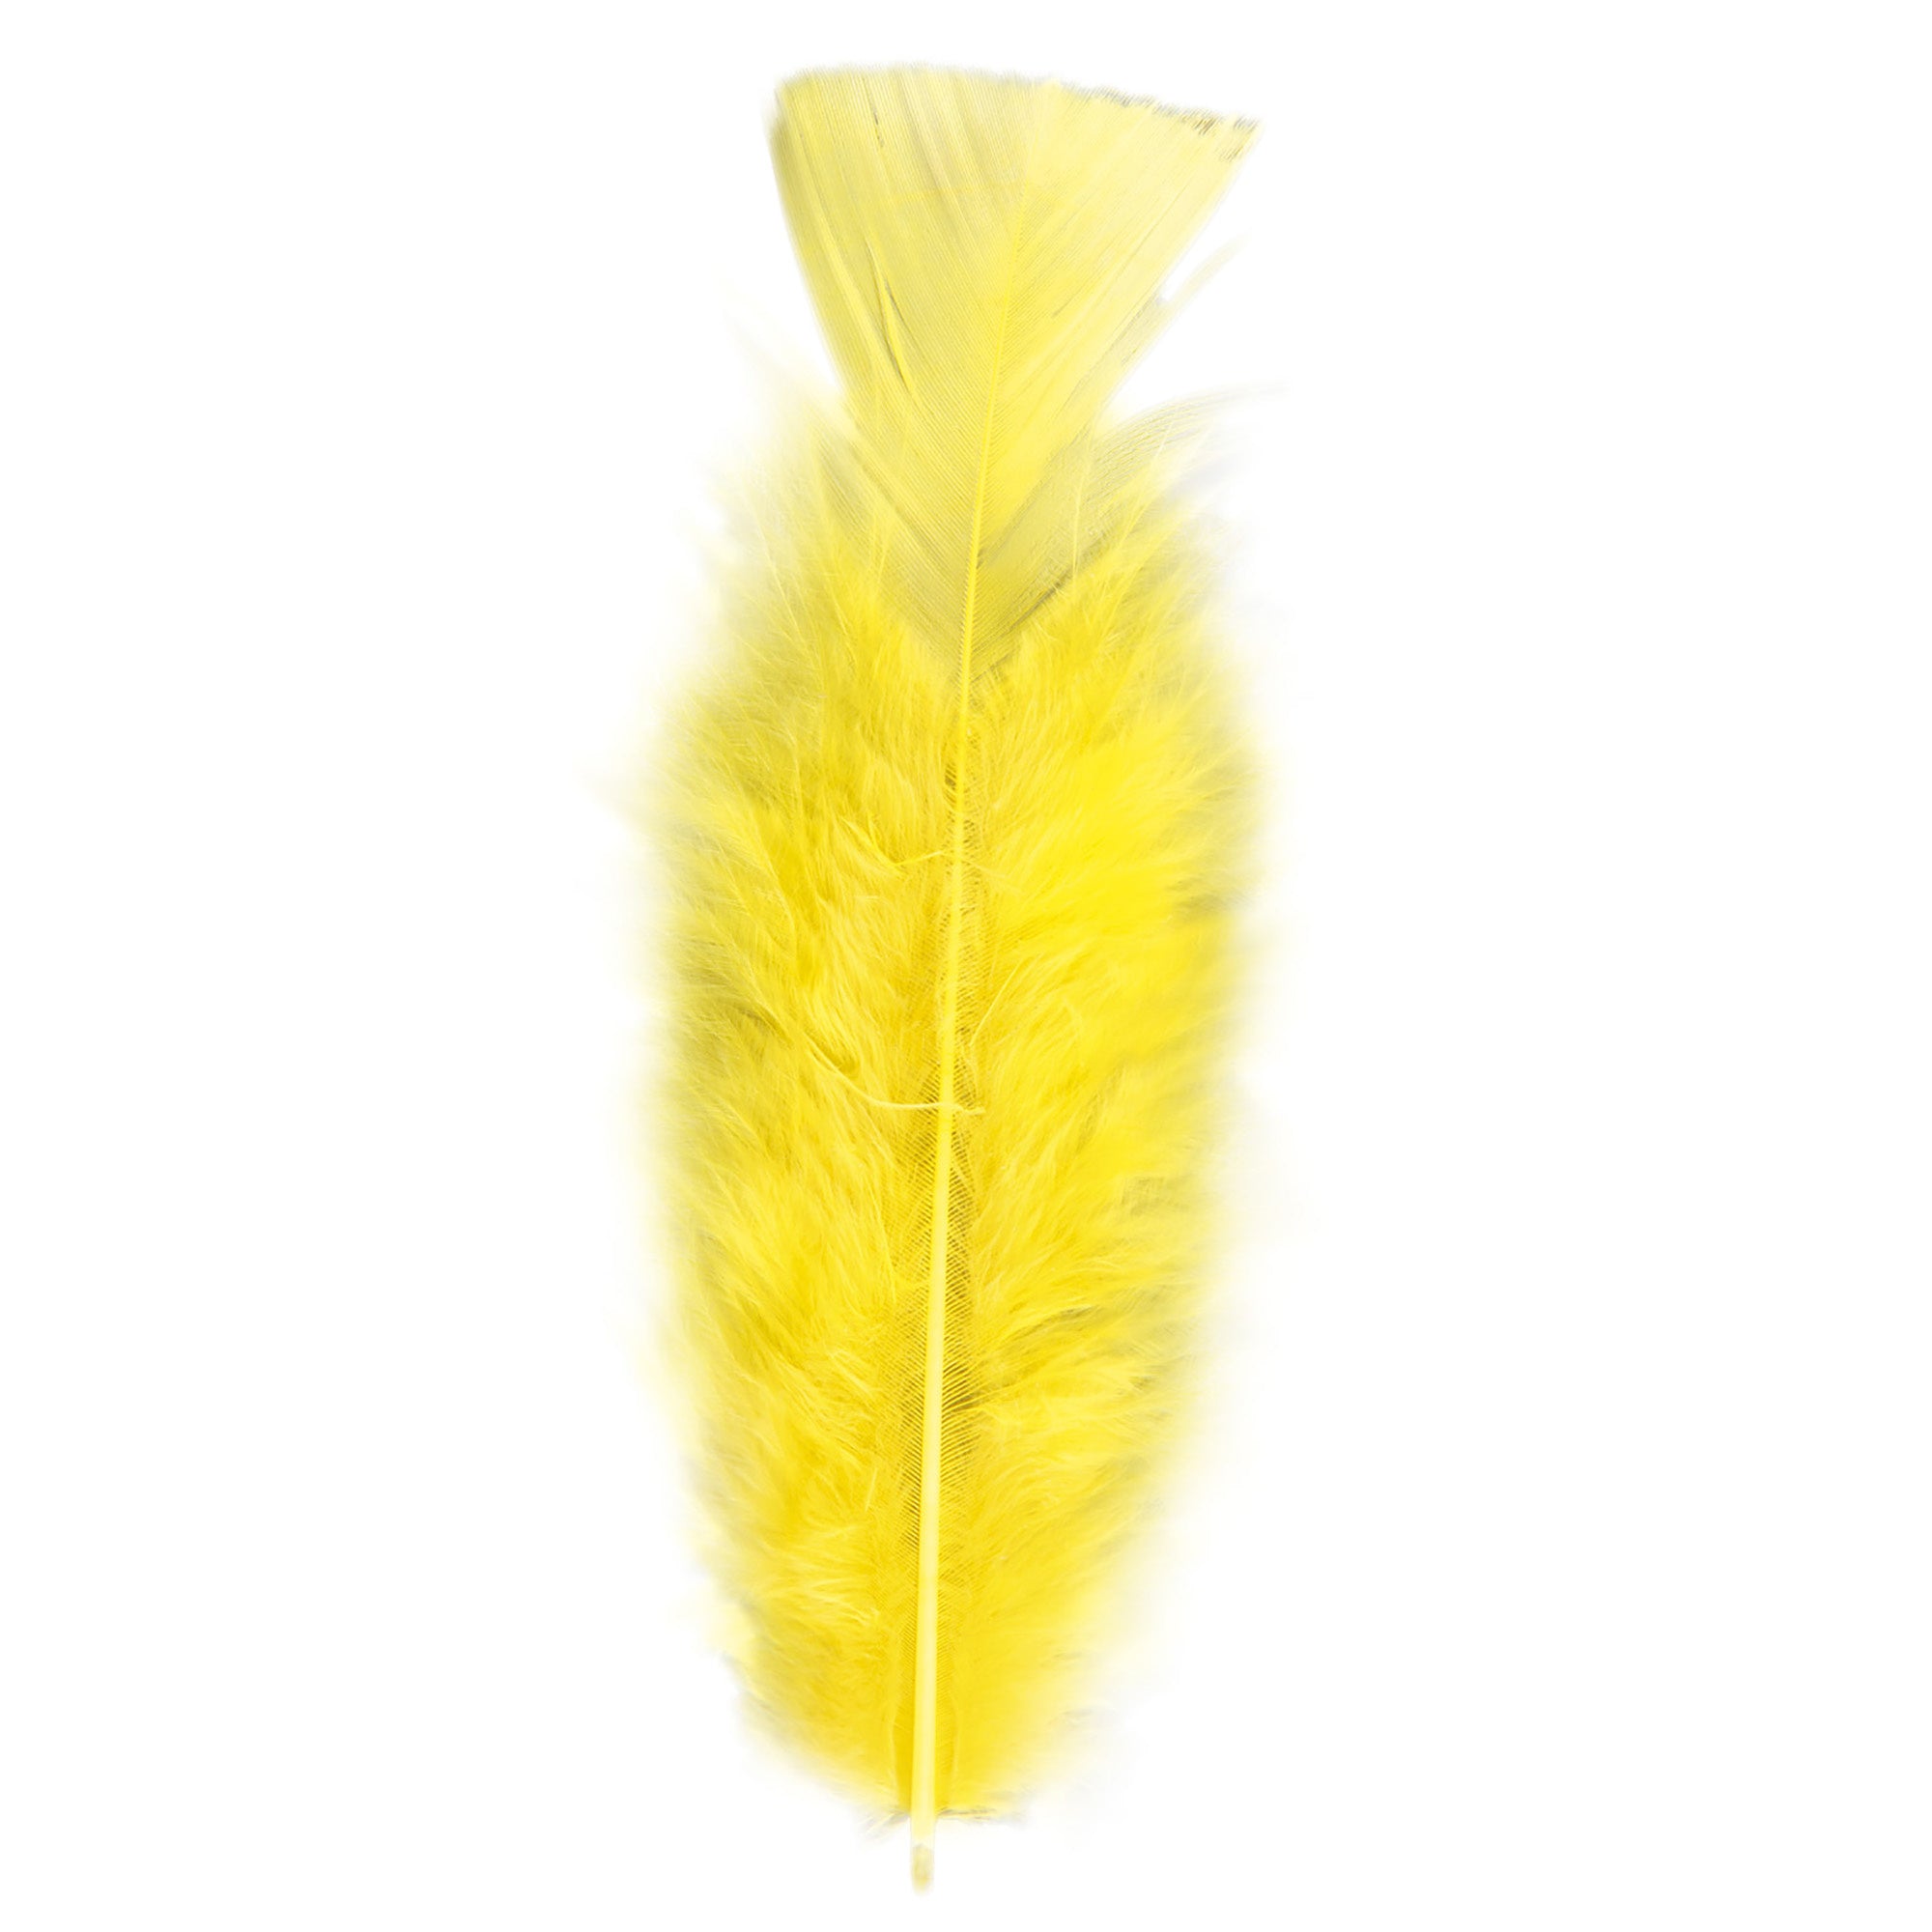 50x Gele veren/sierveertjes decoratie/hobbymateriaal 17 cm - Sierveren - Veertjes - Hobby materiaal om mee te knutselen